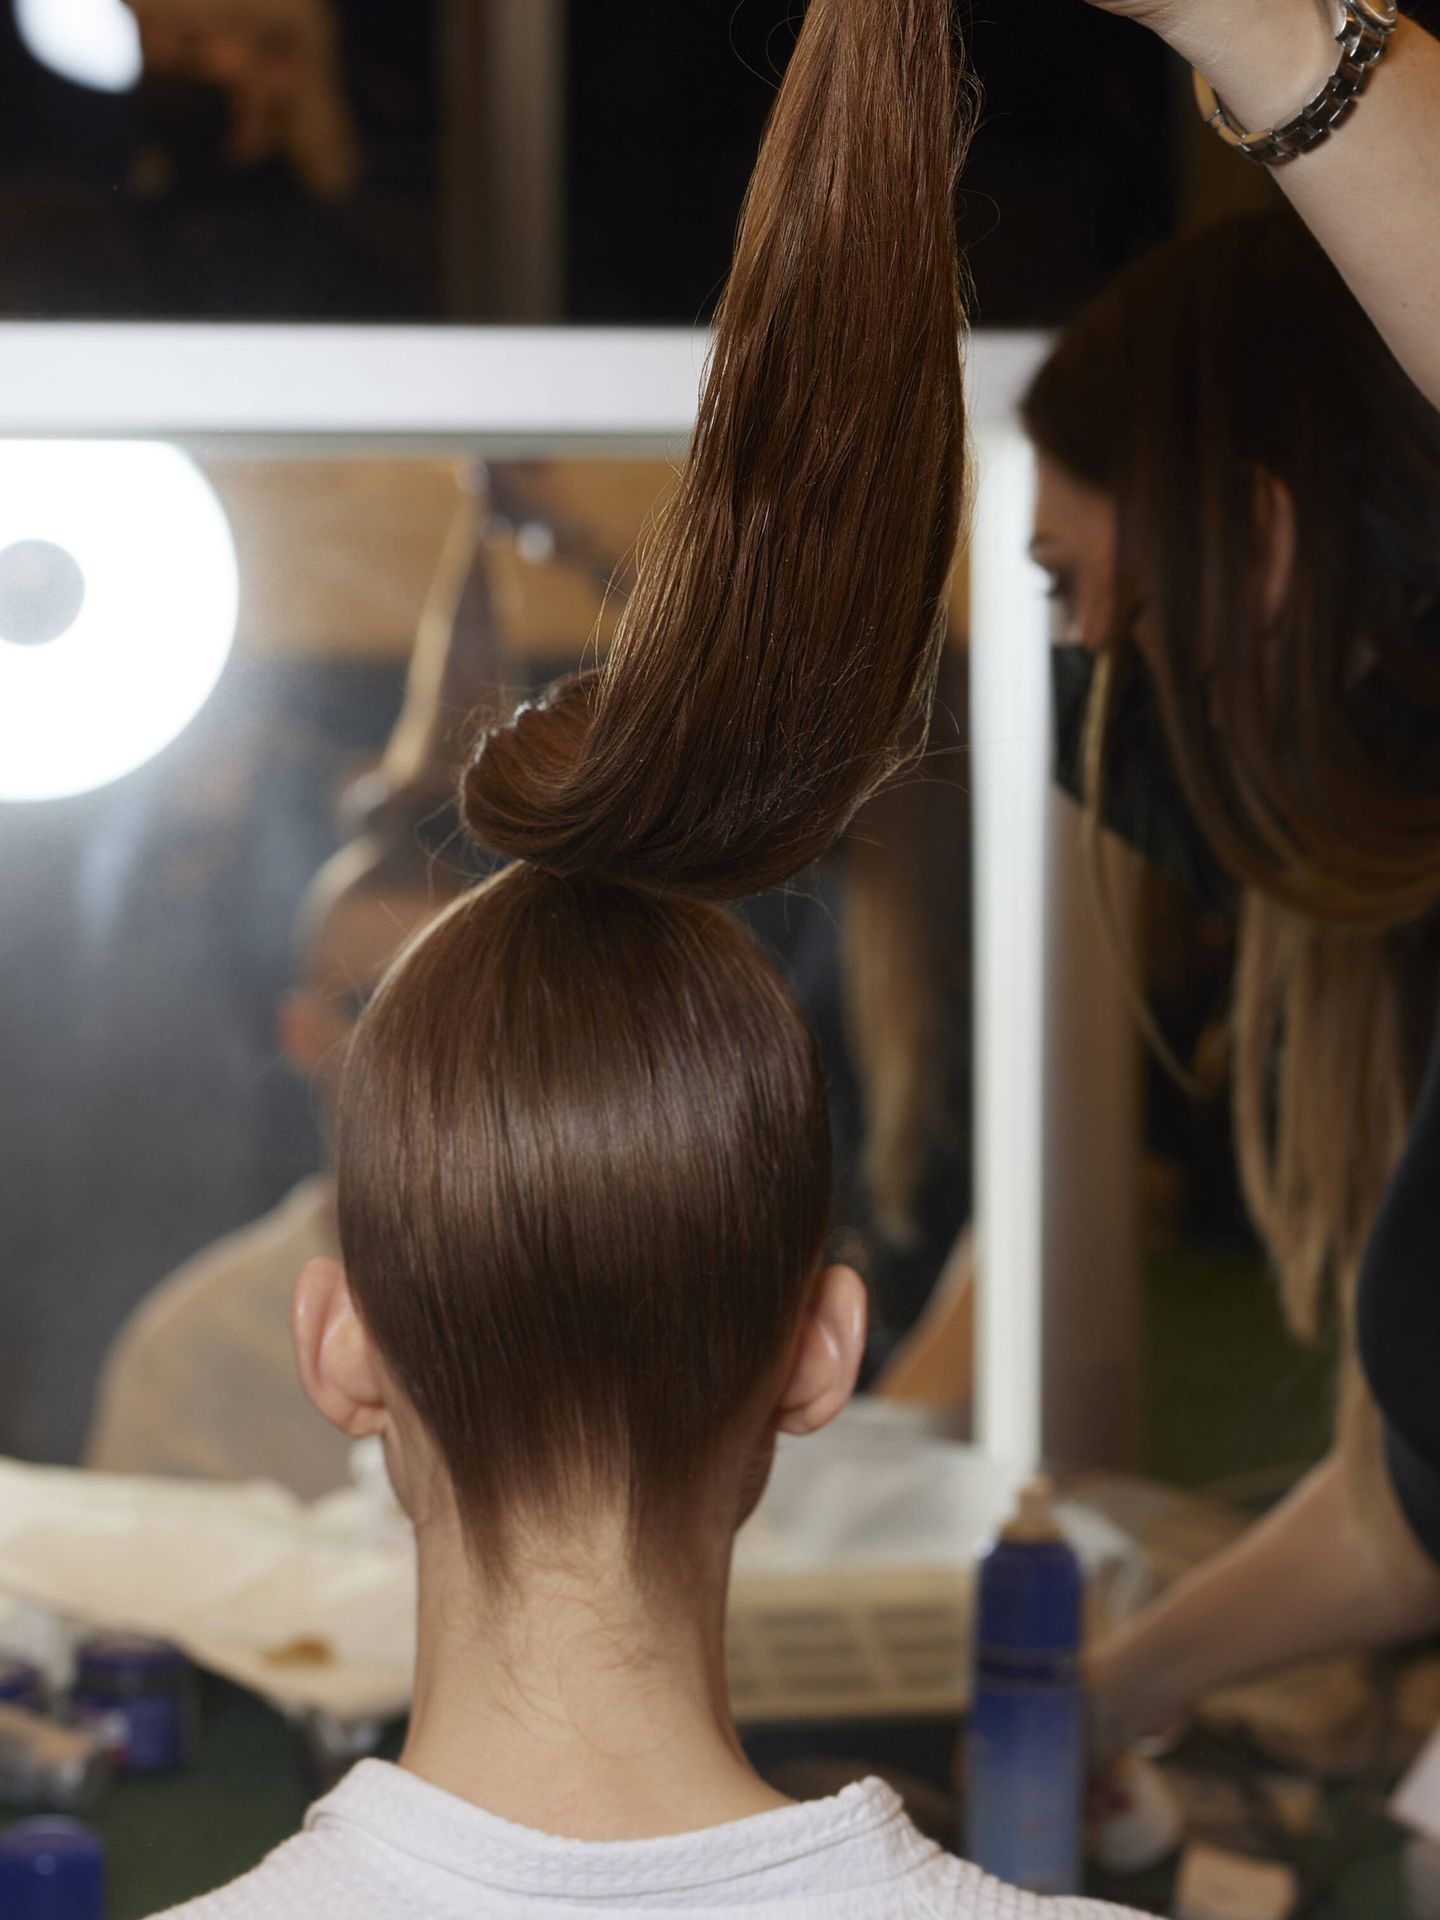 La tensión de una coleta puede dañar el cabello. Backstage del desfile Yanina Alta Costura S22. (Imaxtree/Filippo Fortis)